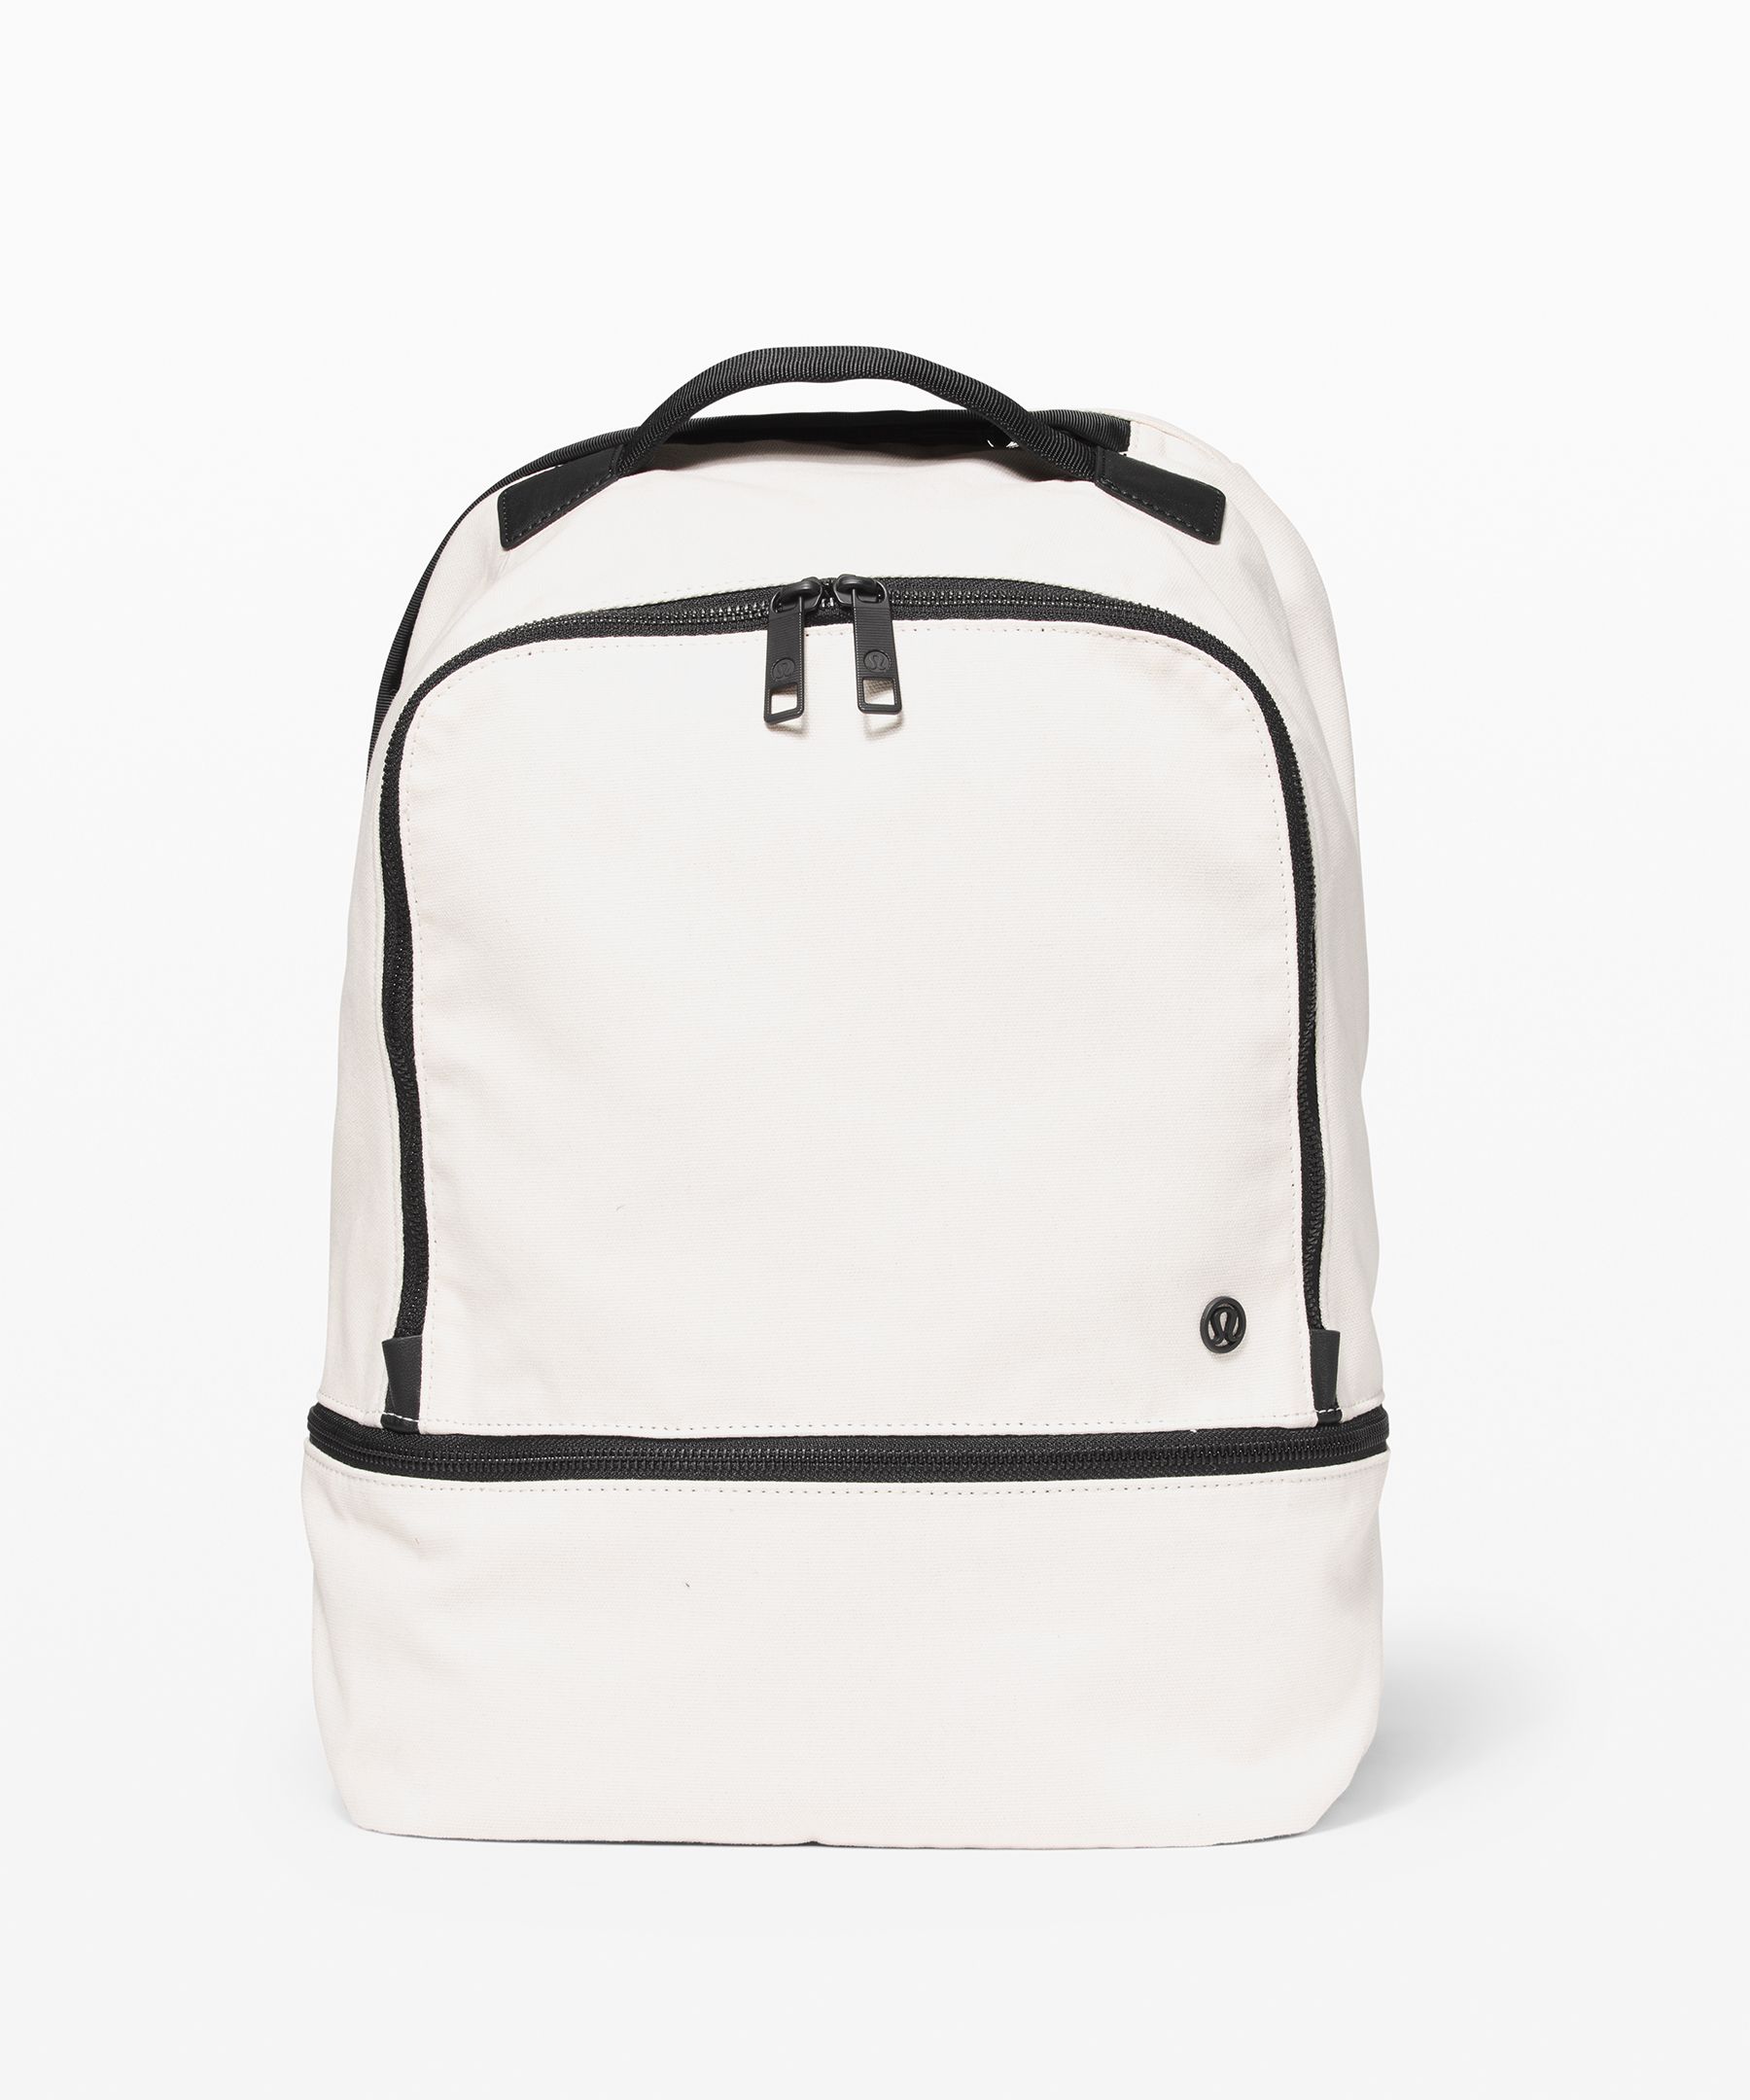 lululemon white backpack